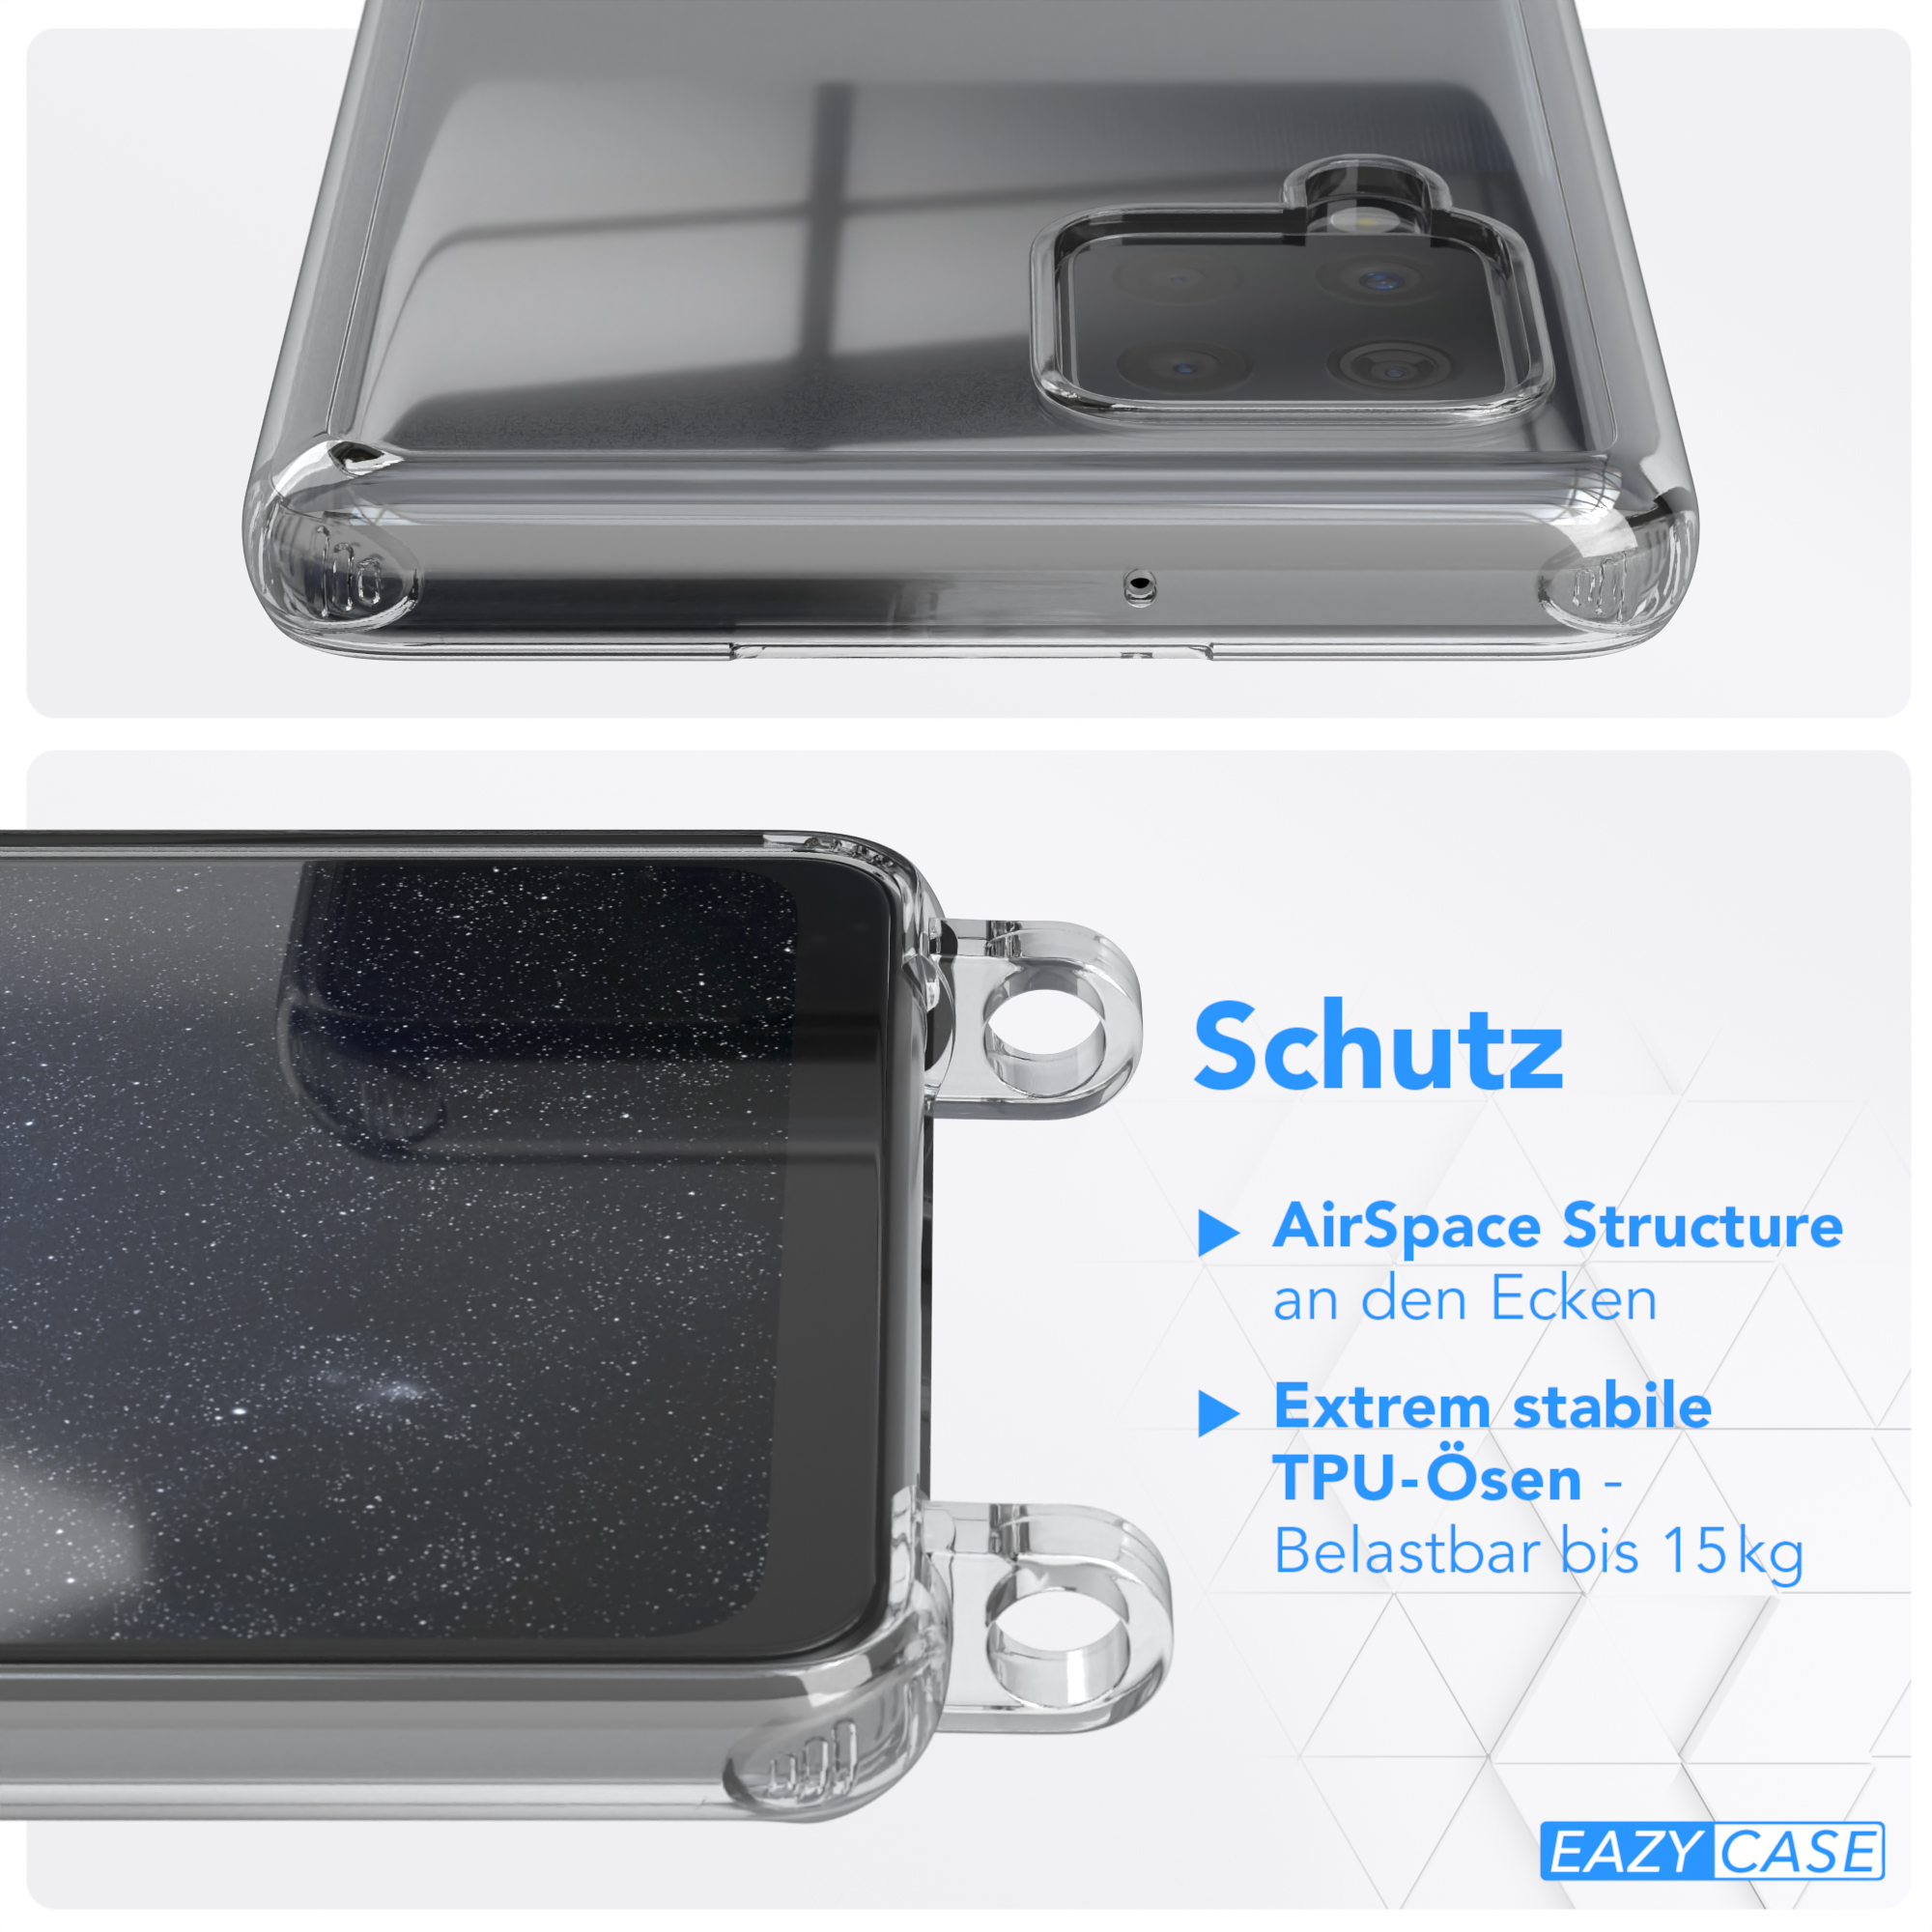 Galaxy mit Samsung, Nachtblau 5G, Dunkelblau unifarbend, EAZY Kette runder / Handyhülle CASE Umhängetasche, Transparente A42